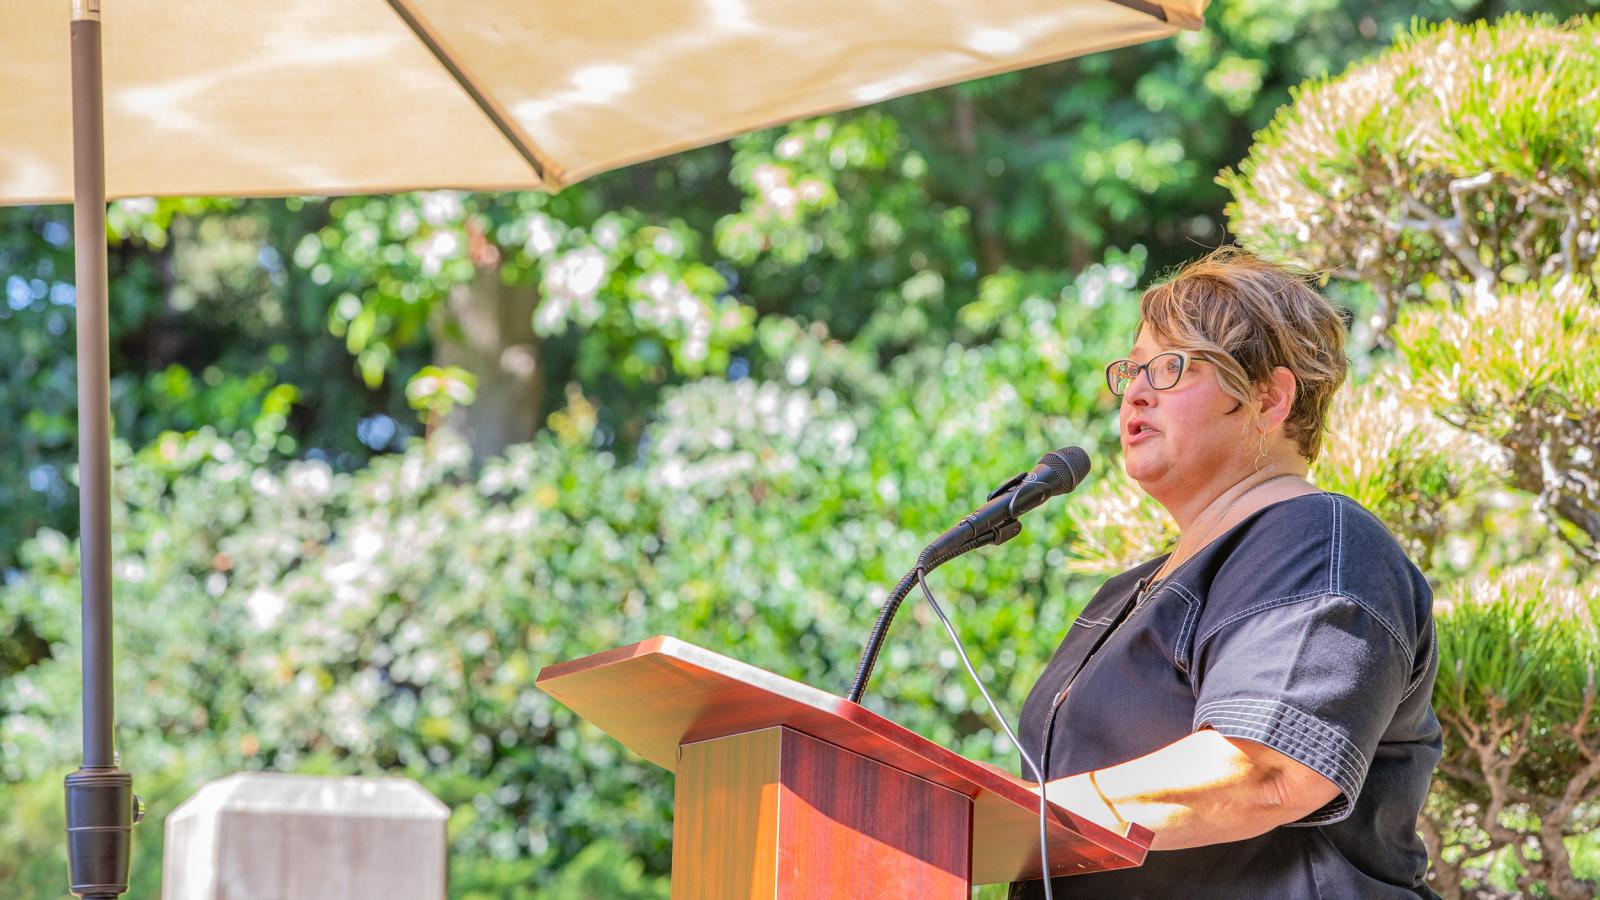 Professor Beth Manke speaking at podium under an umbrella